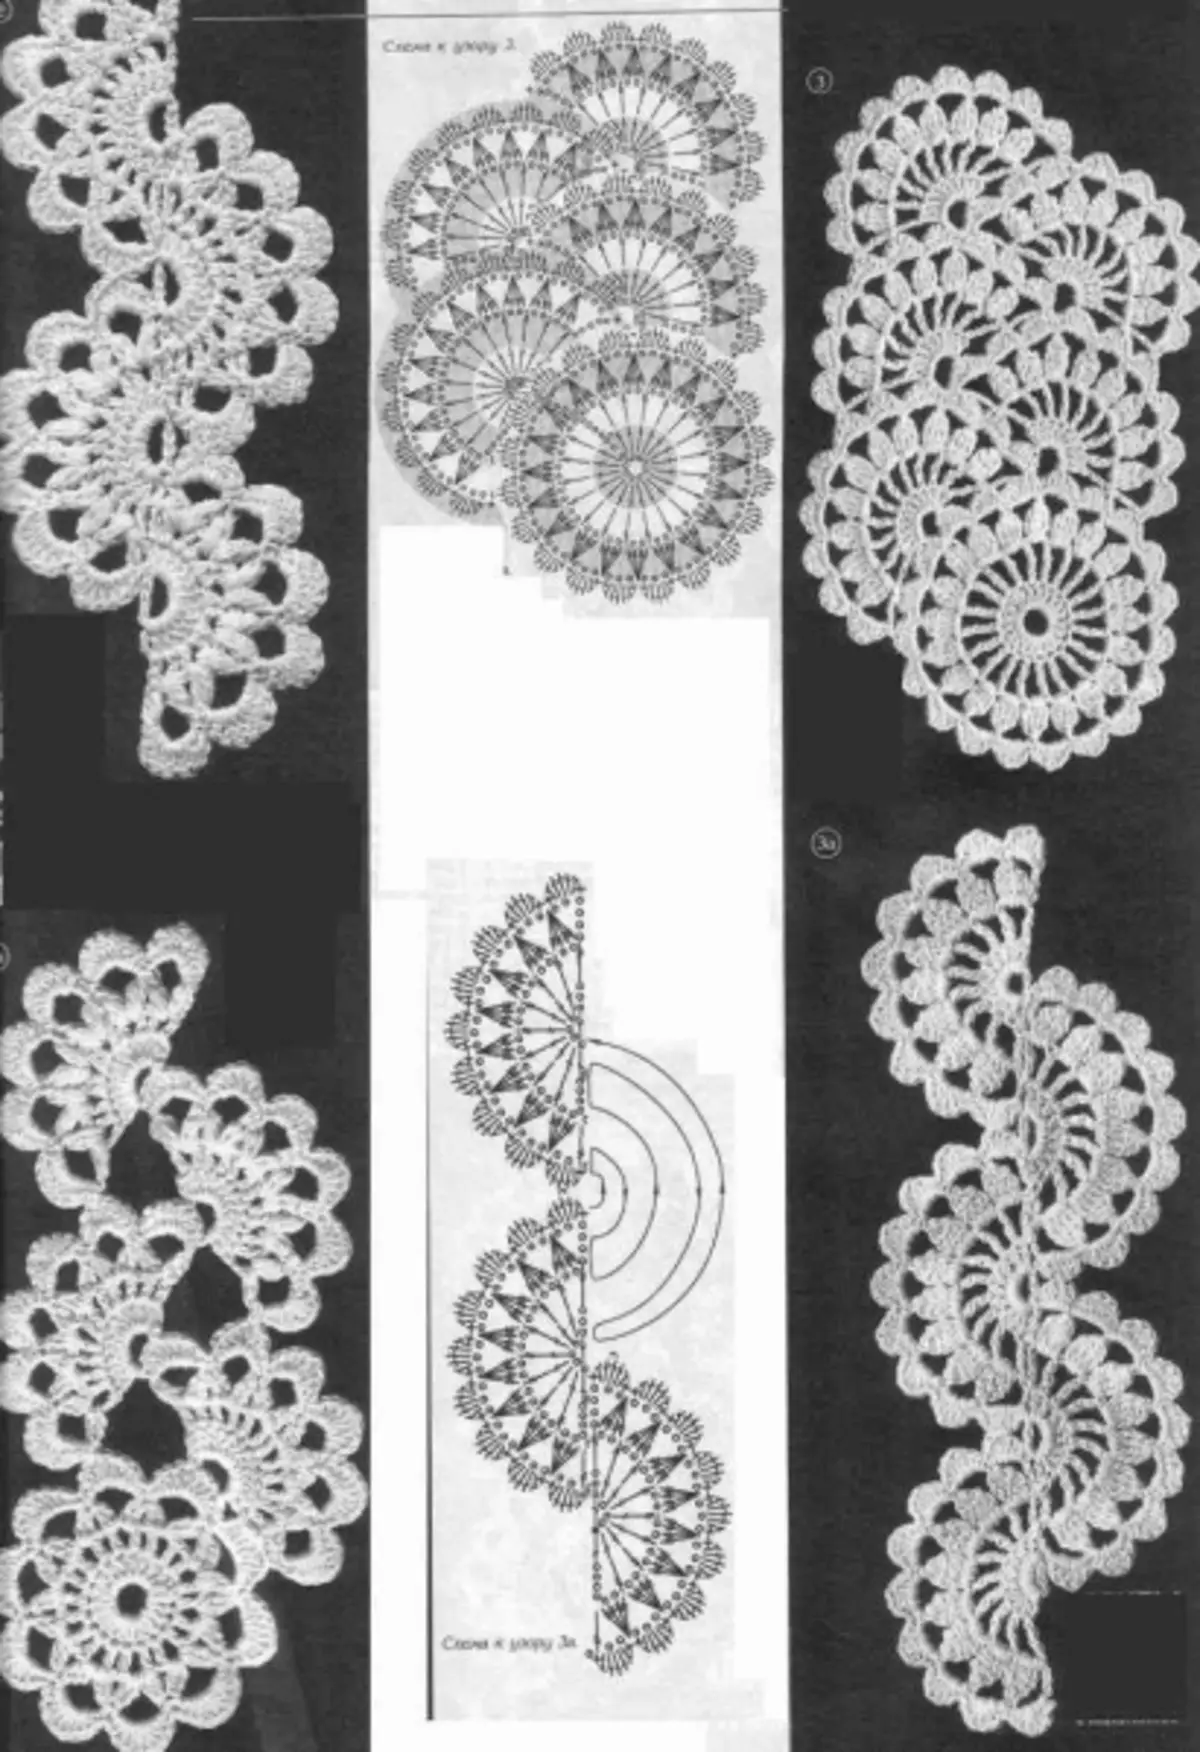 ರಿಬ್ಬನ್ ಲೇಸ್ Crochet: ಯೋಜನೆಗಳು ಮತ್ತು ಮಾದರಿಗಳು, ಹೇಗೆ ಫೋಟೋಗಳು ಮತ್ತು ವೀಡಿಯೊಗಳೊಂದಿಗೆ ಹೊಸ ಬಟ್ಟೆಗಳನ್ನು